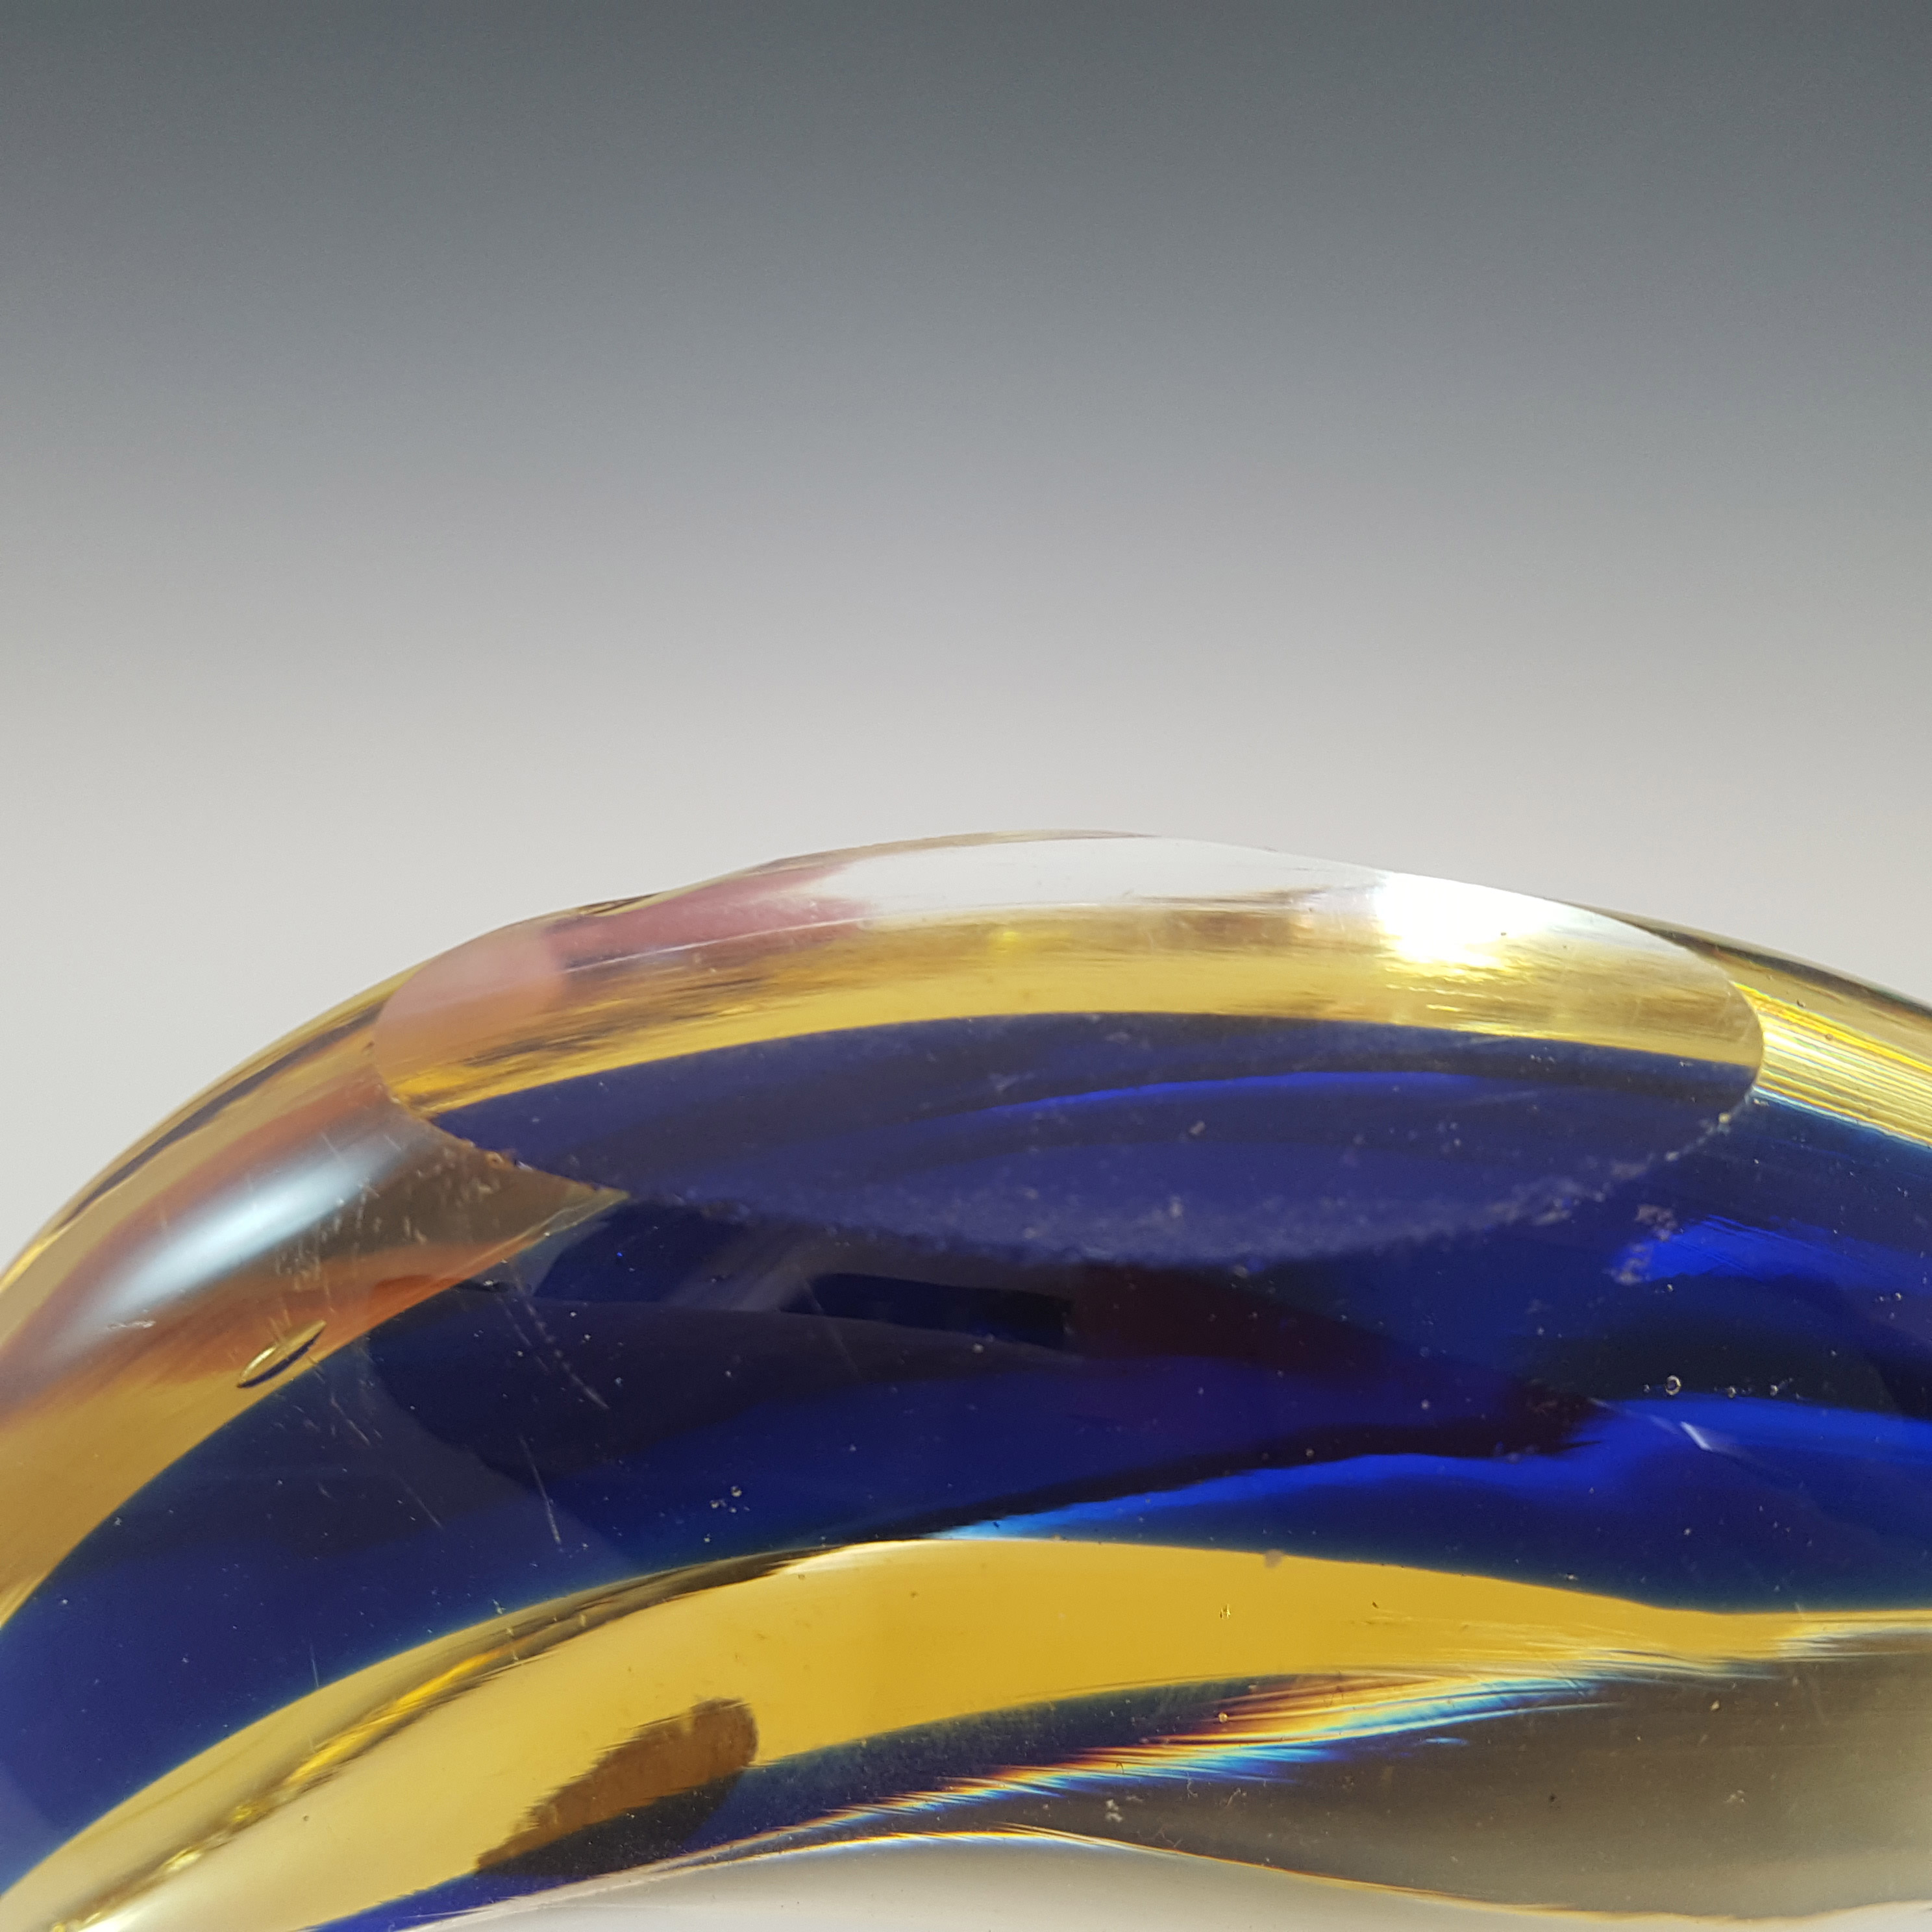 Ferro & Lazzarini Murano Blue & Amber Sommerso Glass Swan - Click Image to Close